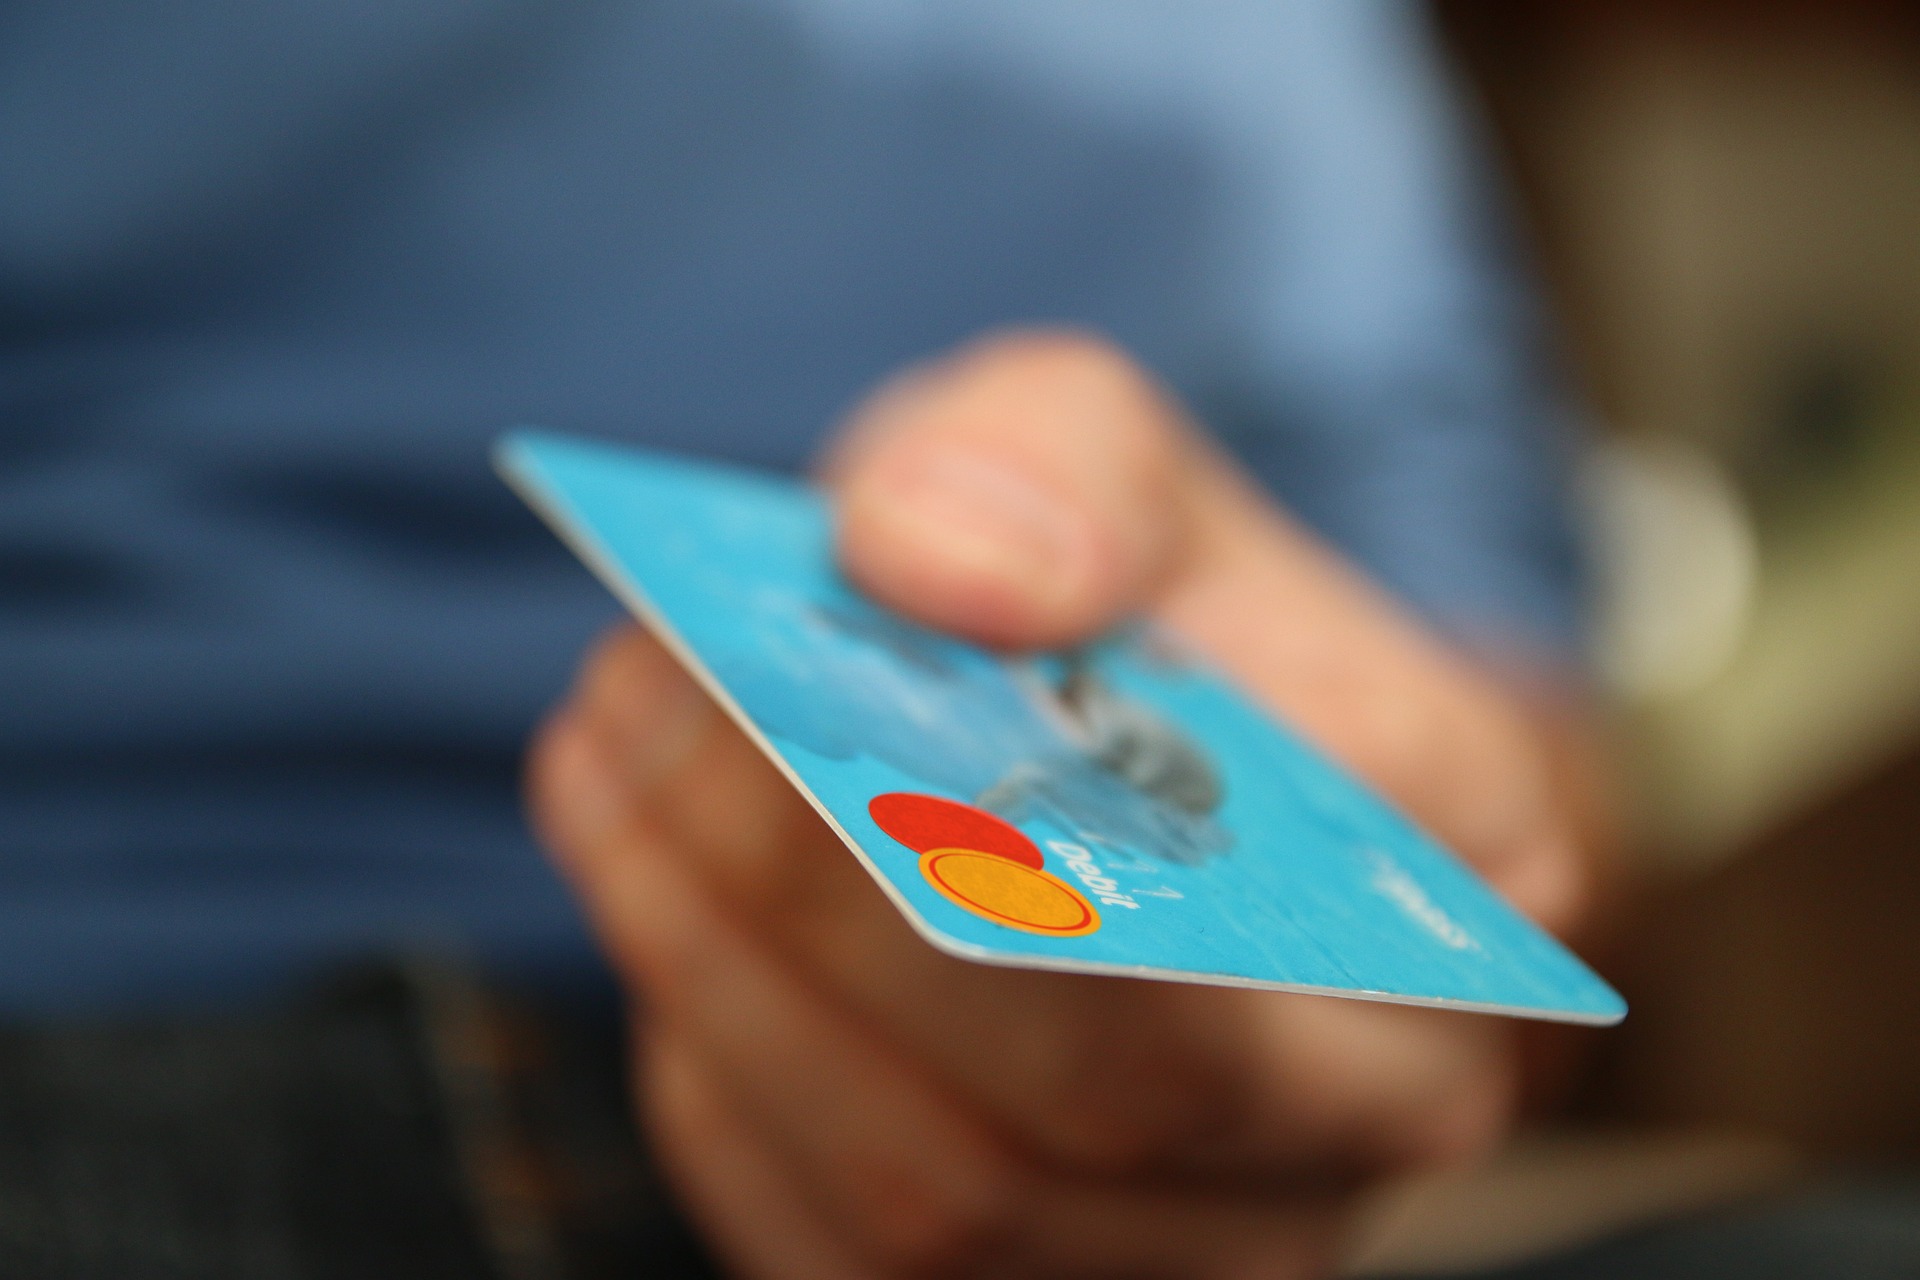 Karta kredytowa – Jak działa i jak jej używać, aby uniknąć niepotrzebnych kosztów